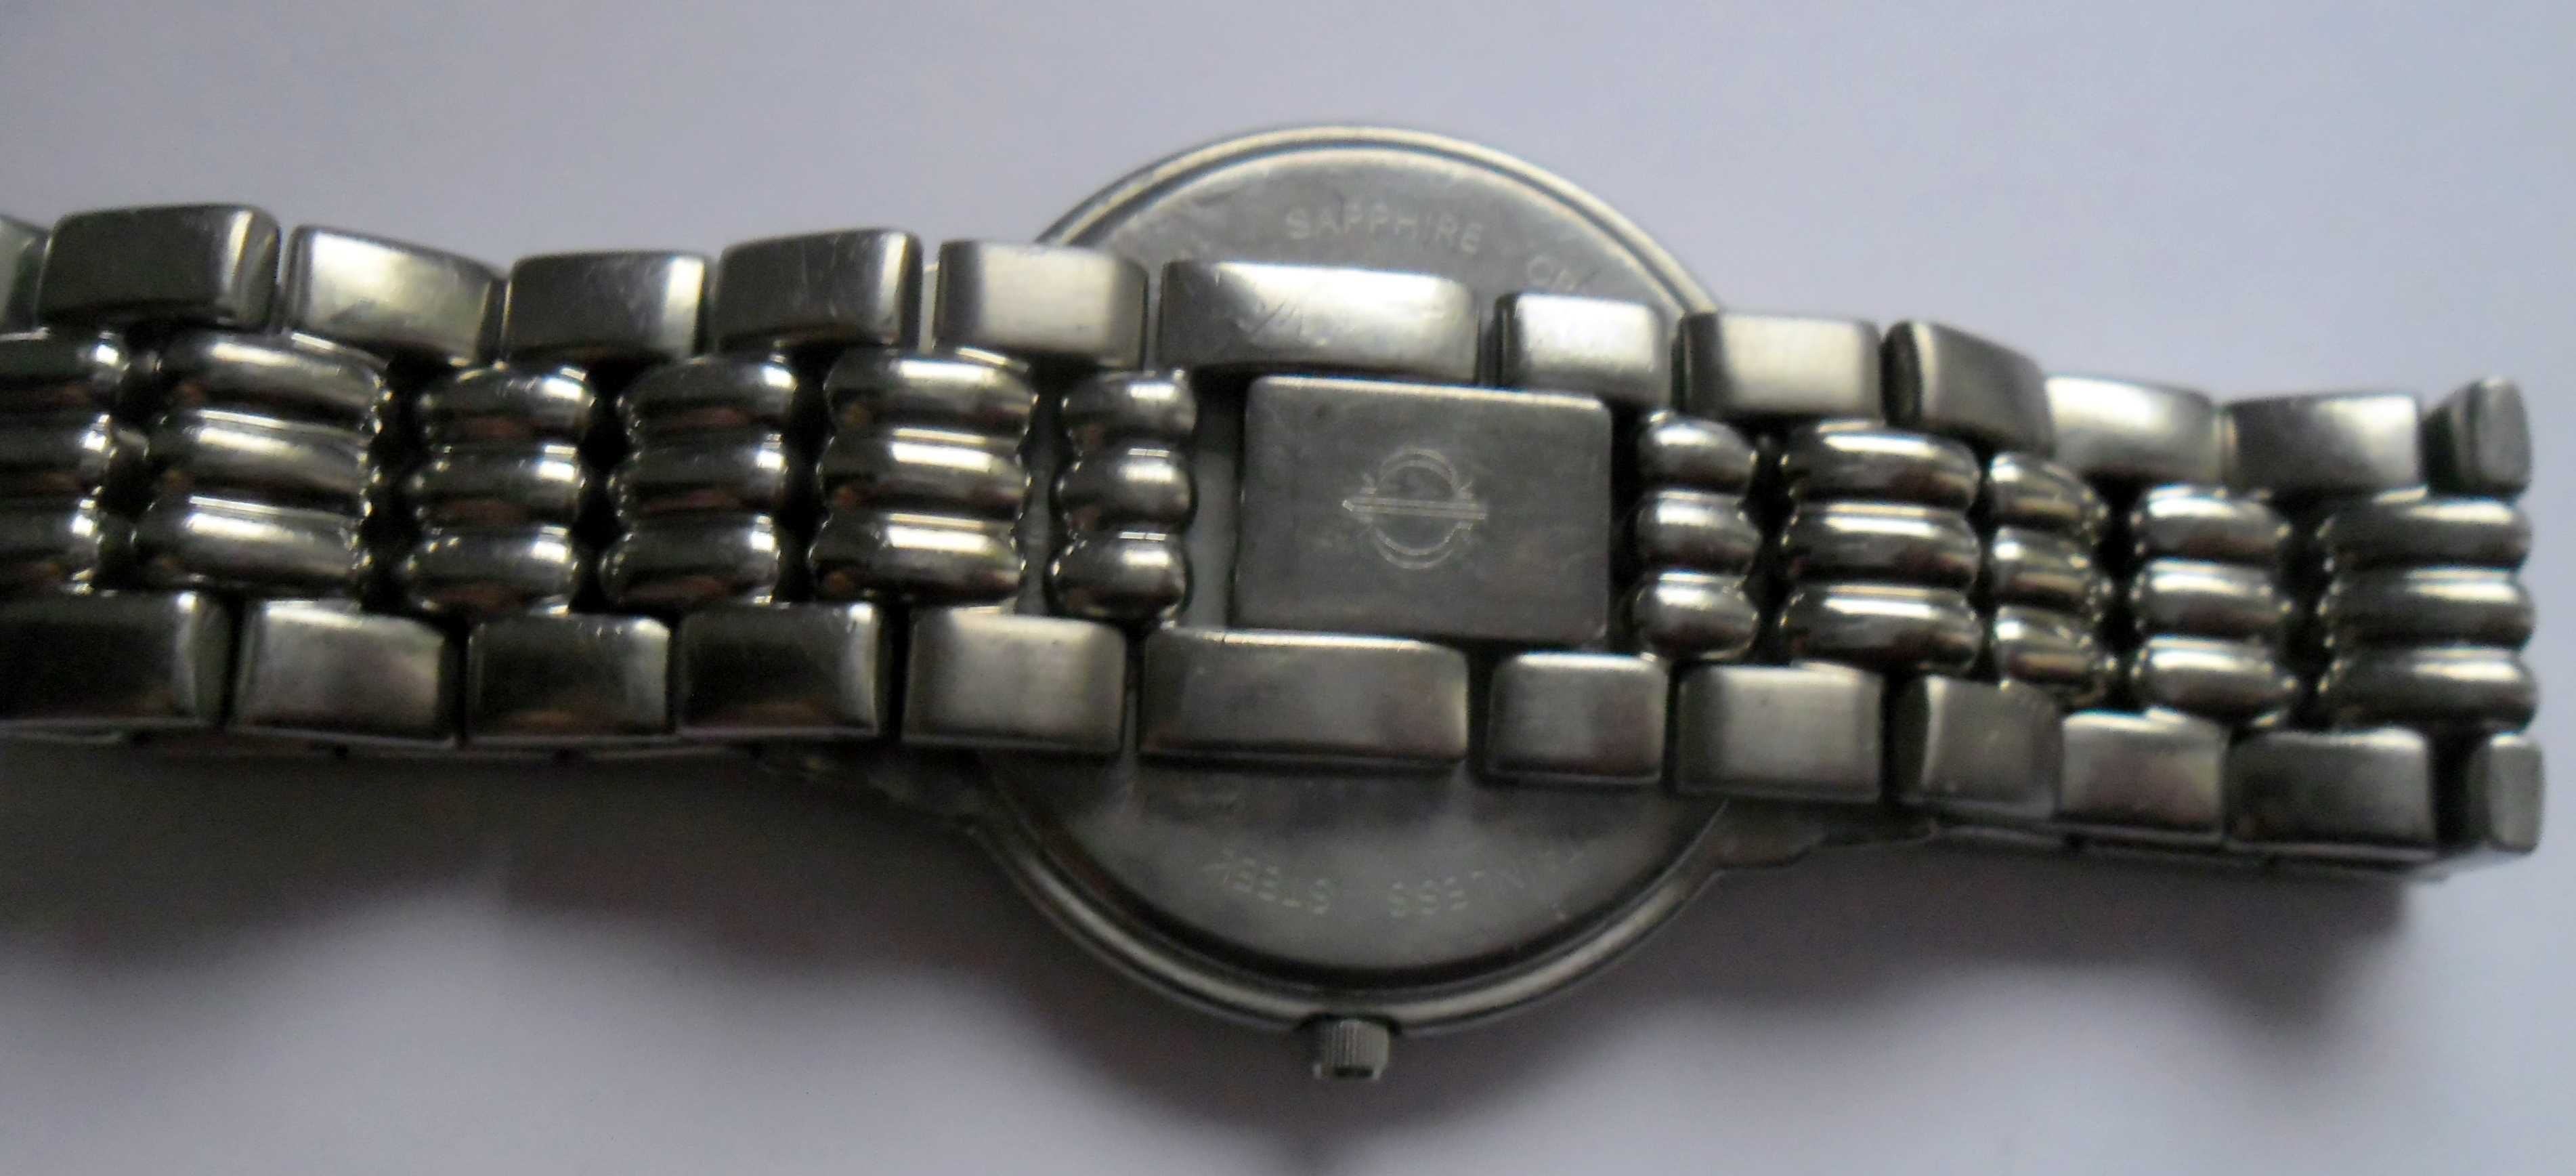 zegarek Candino szwajcarski  z szafirowym szkiełkiem